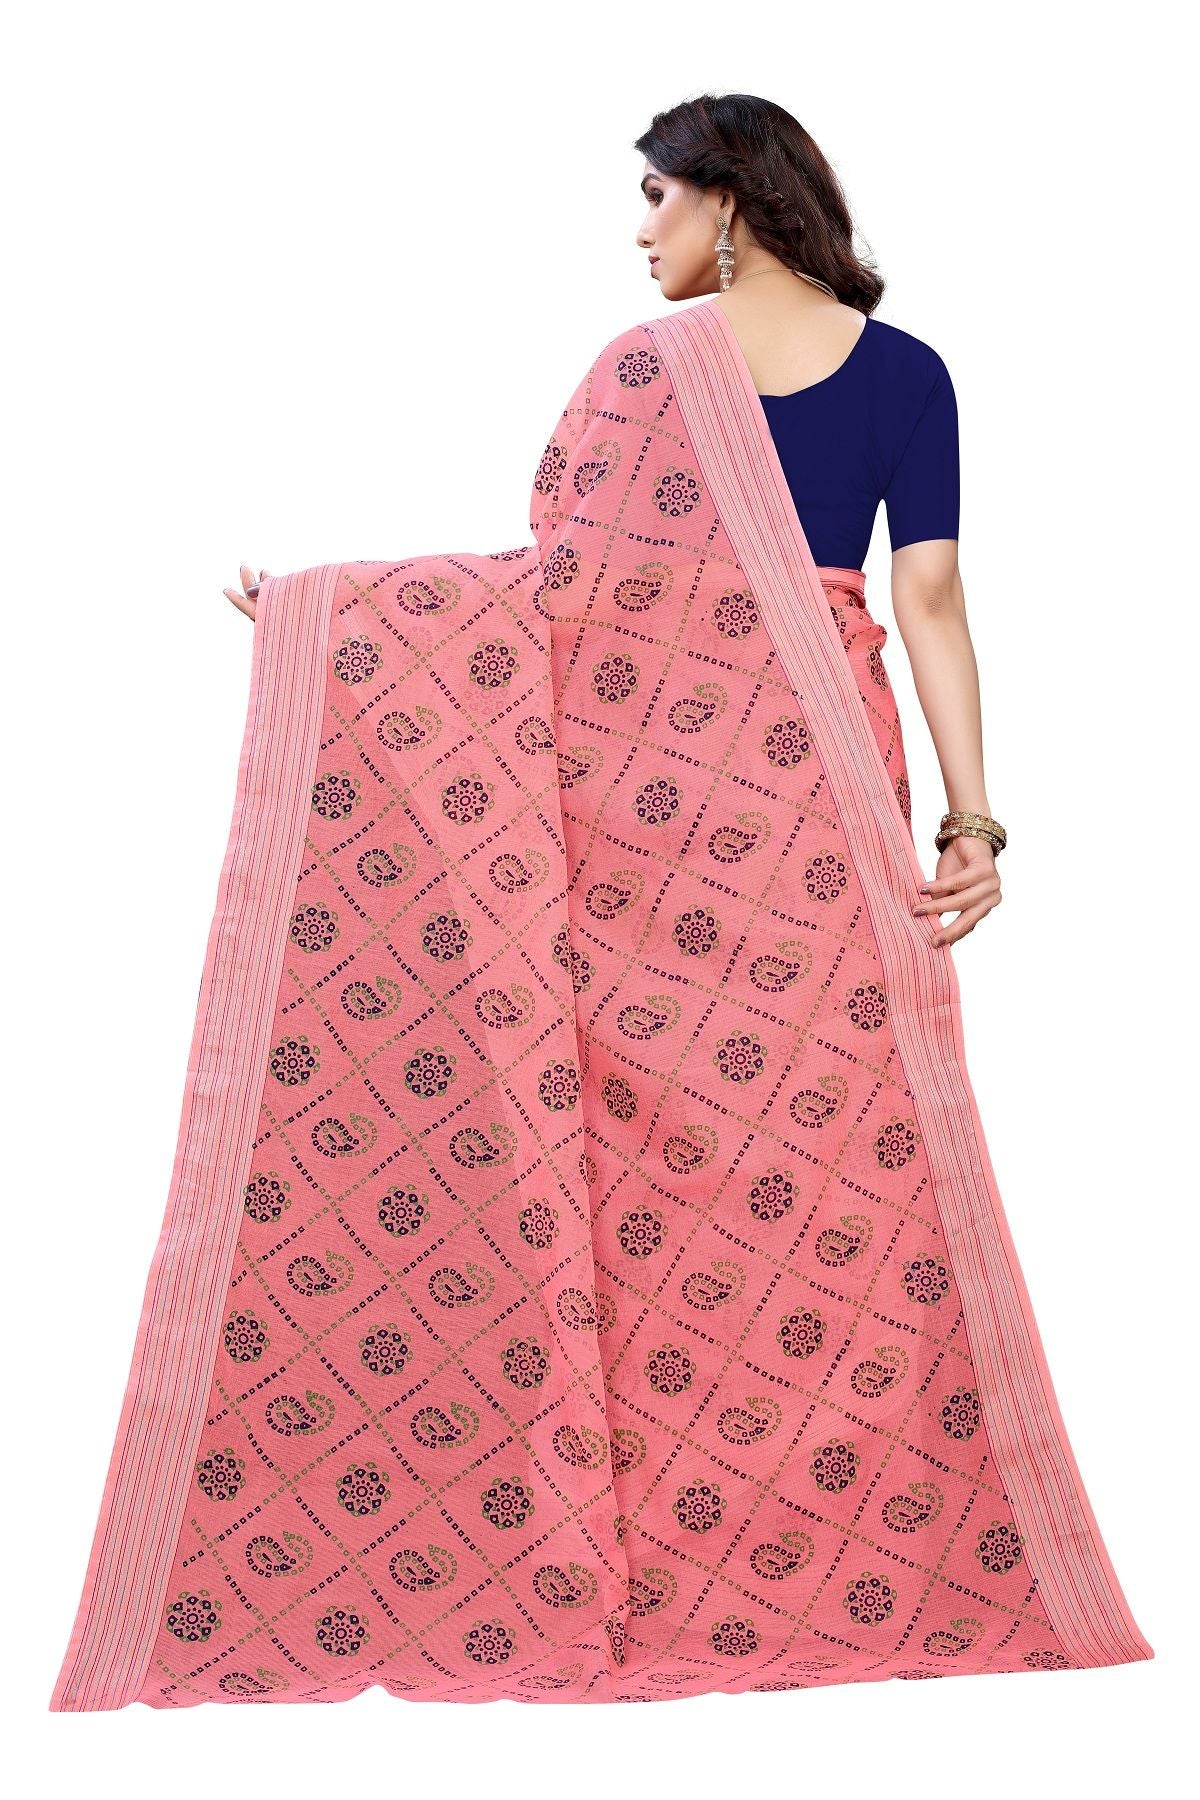 Women's Linen Jari Border Saree With Blouse Piece3  - Vamika